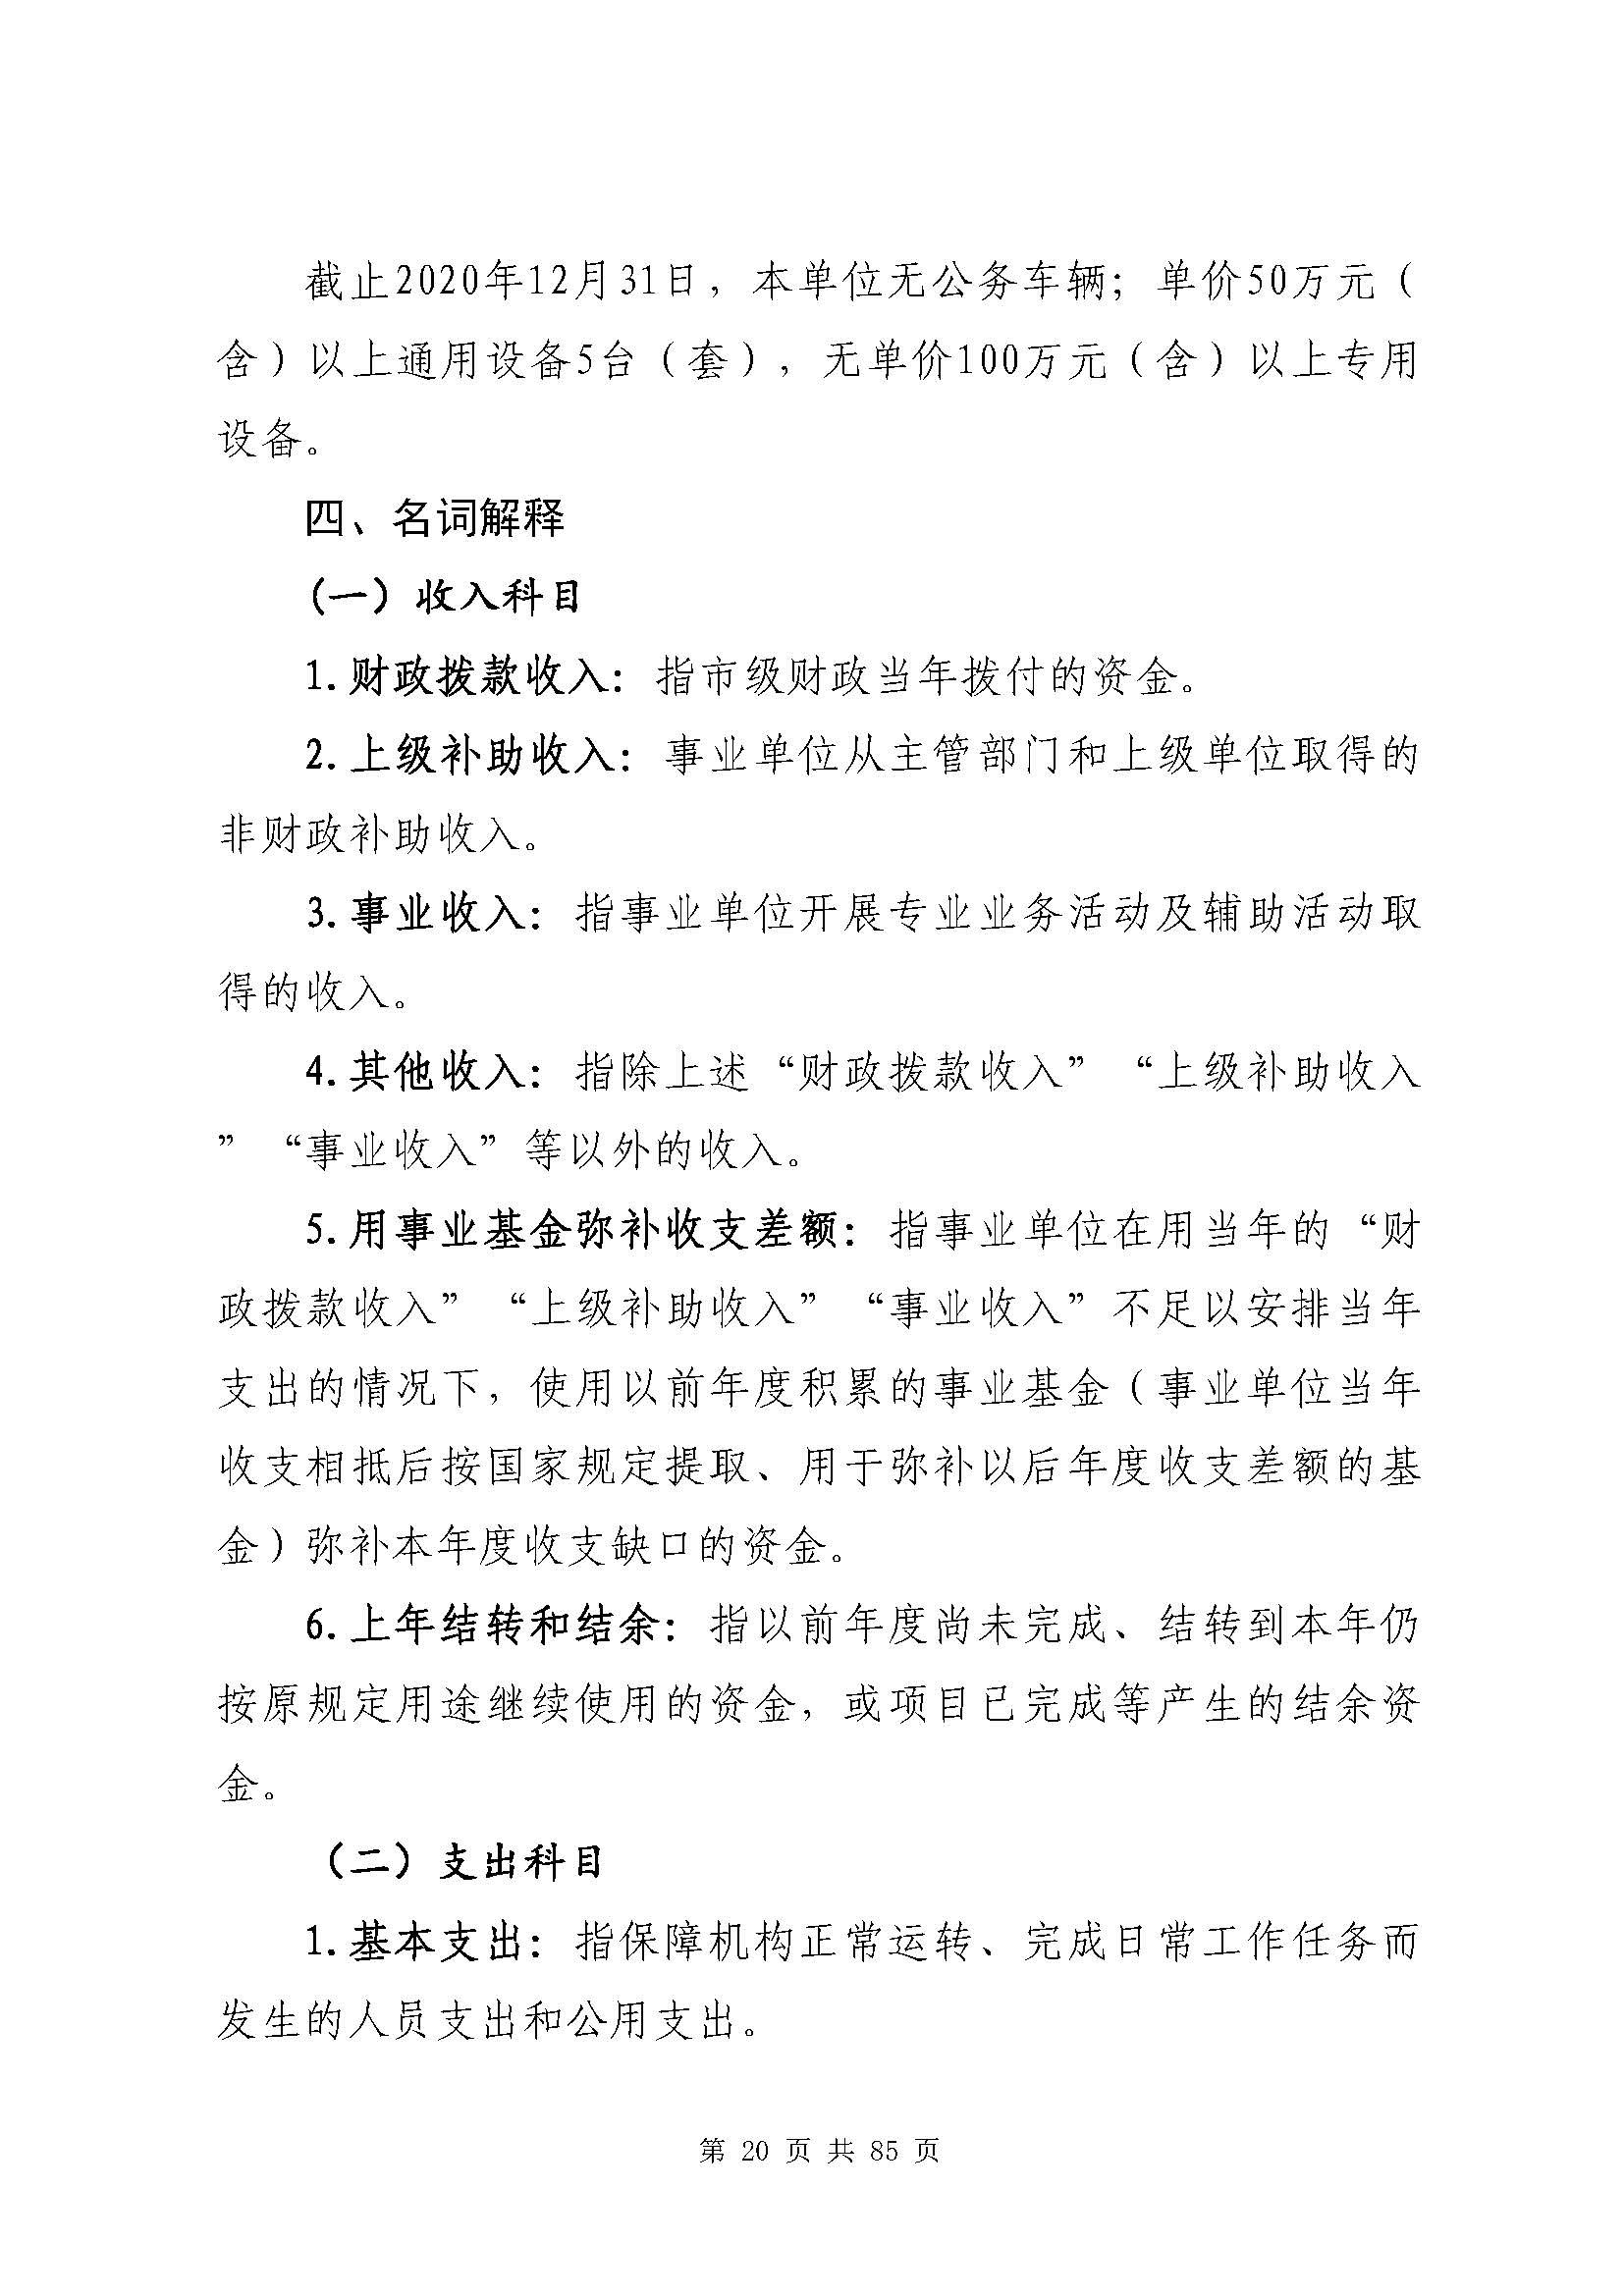 深圳市招生考试办公室2020年度部门决算_页面_21.jpg